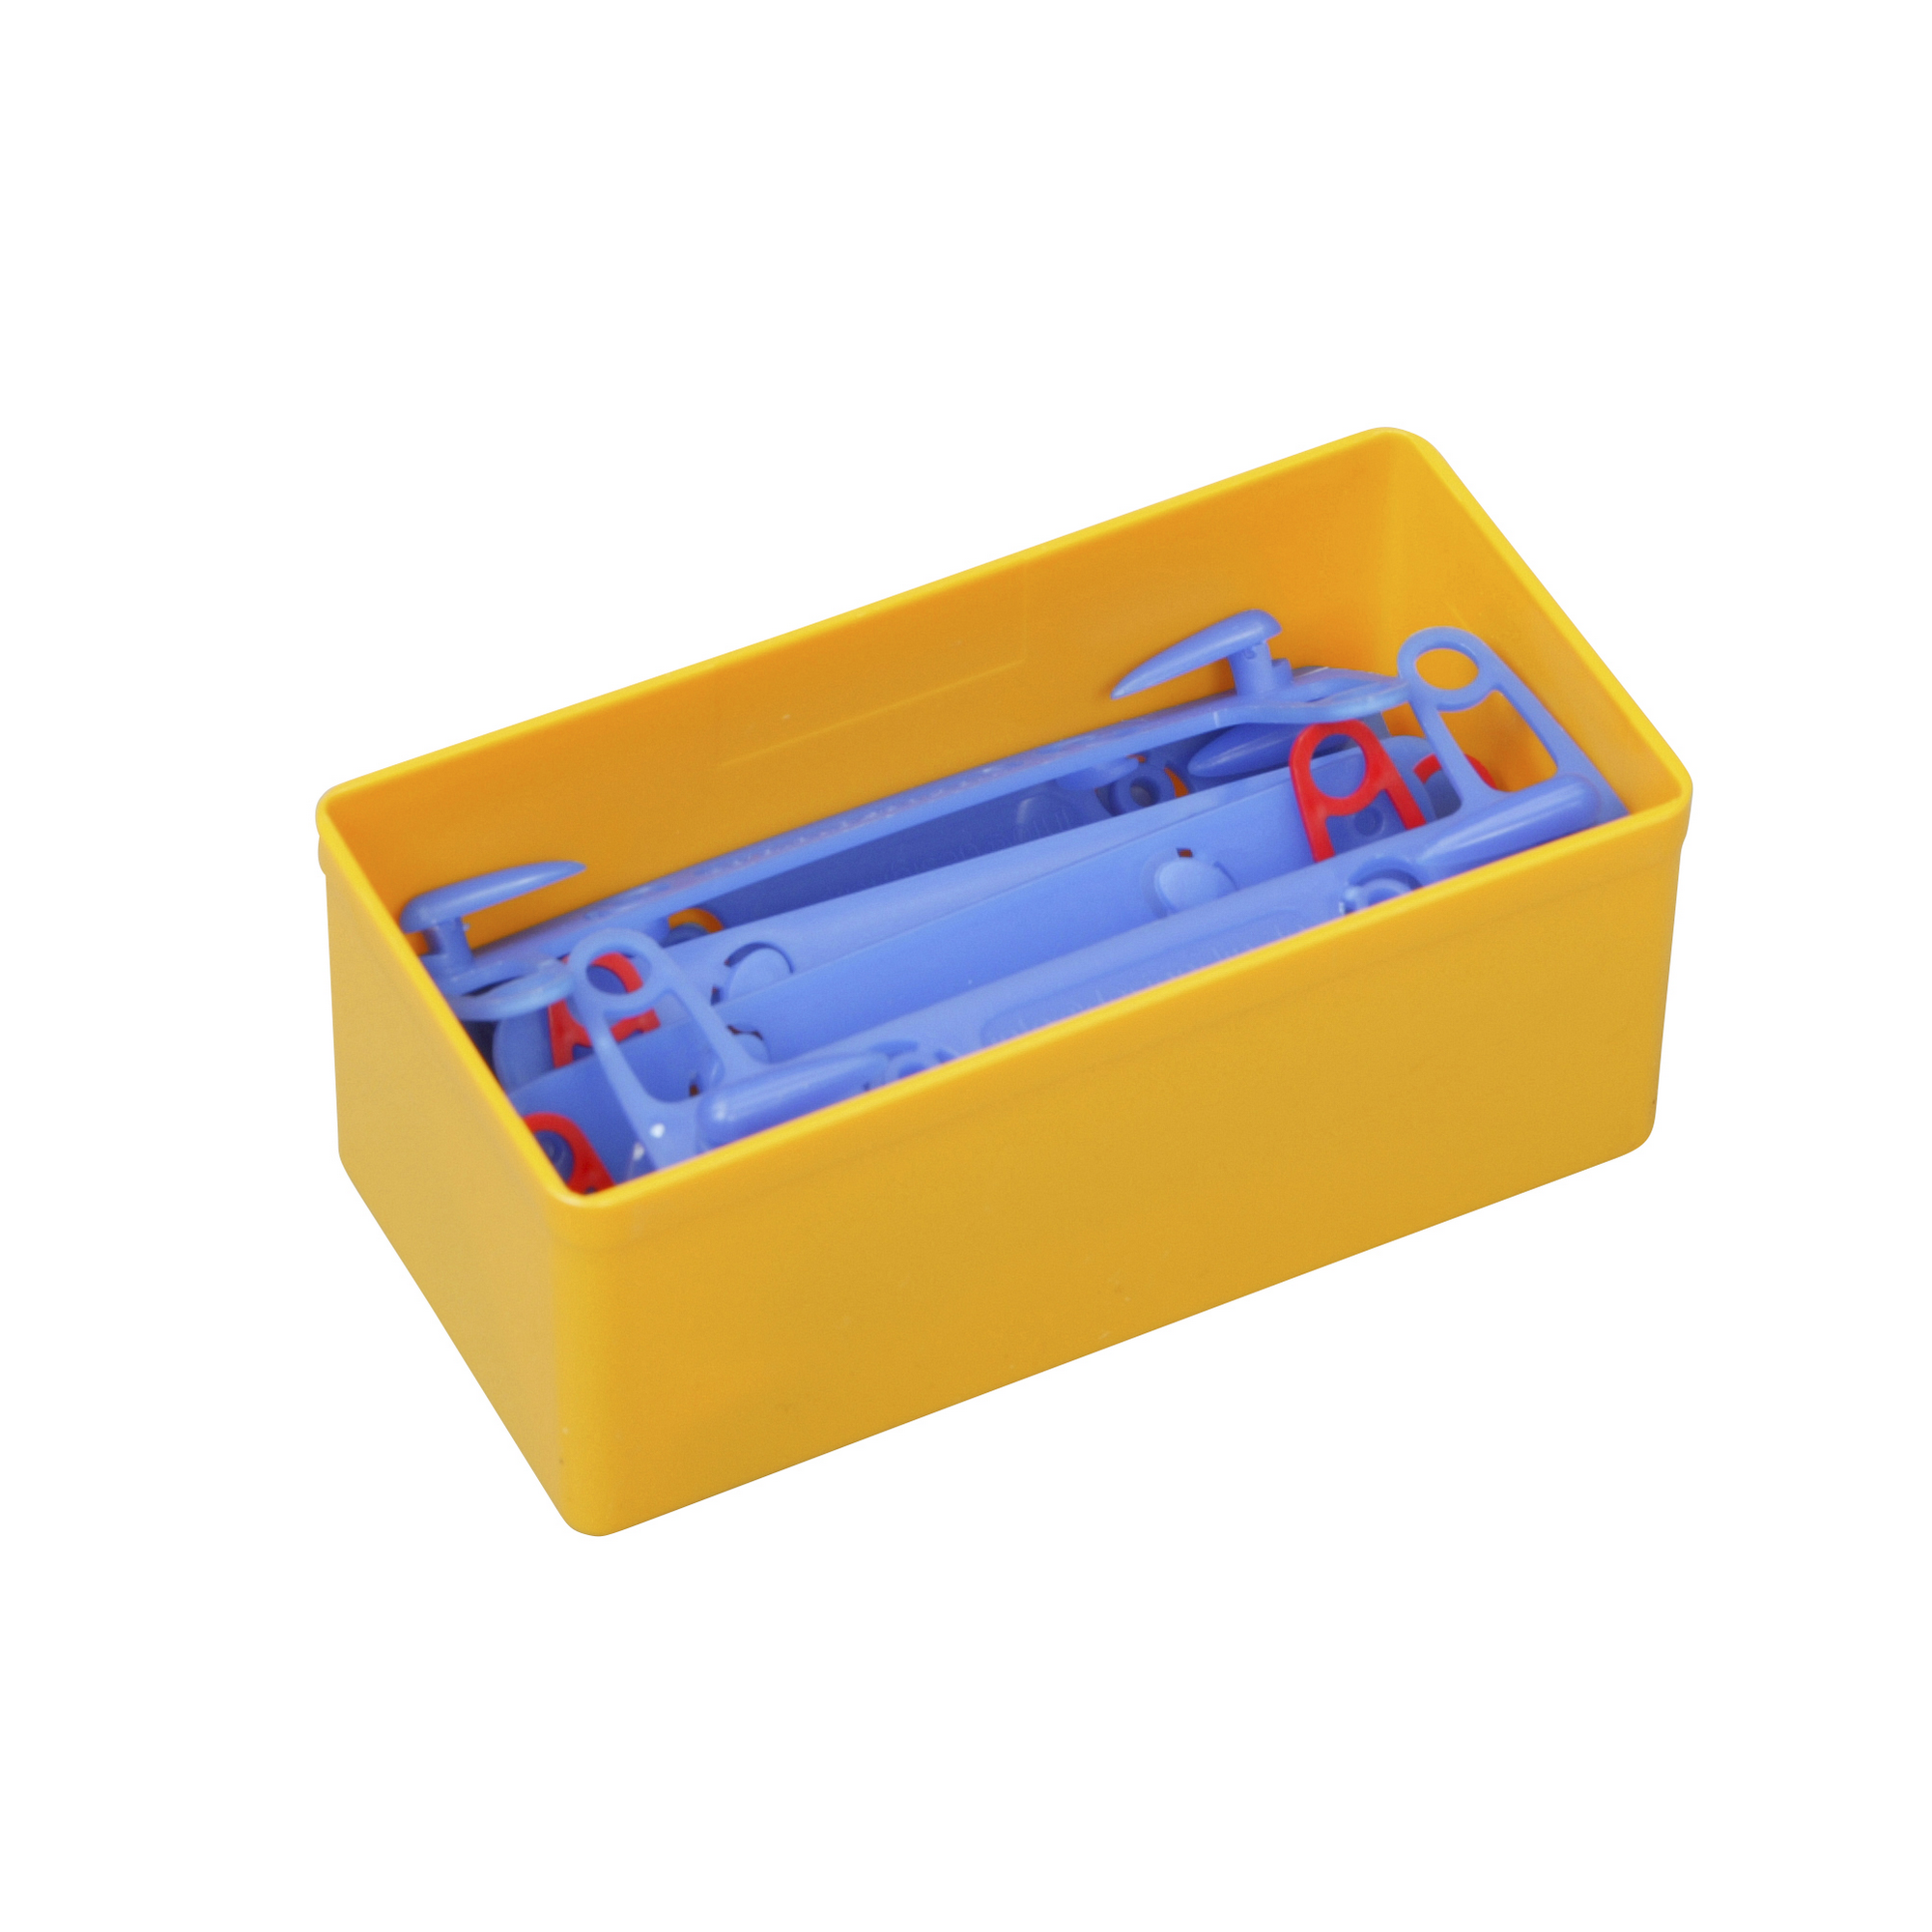 EuroPlus Einsatzbox 'Insert 45/2' Größe 2 gelb 10,8 x 5,4 x 4,5 cm + product picture